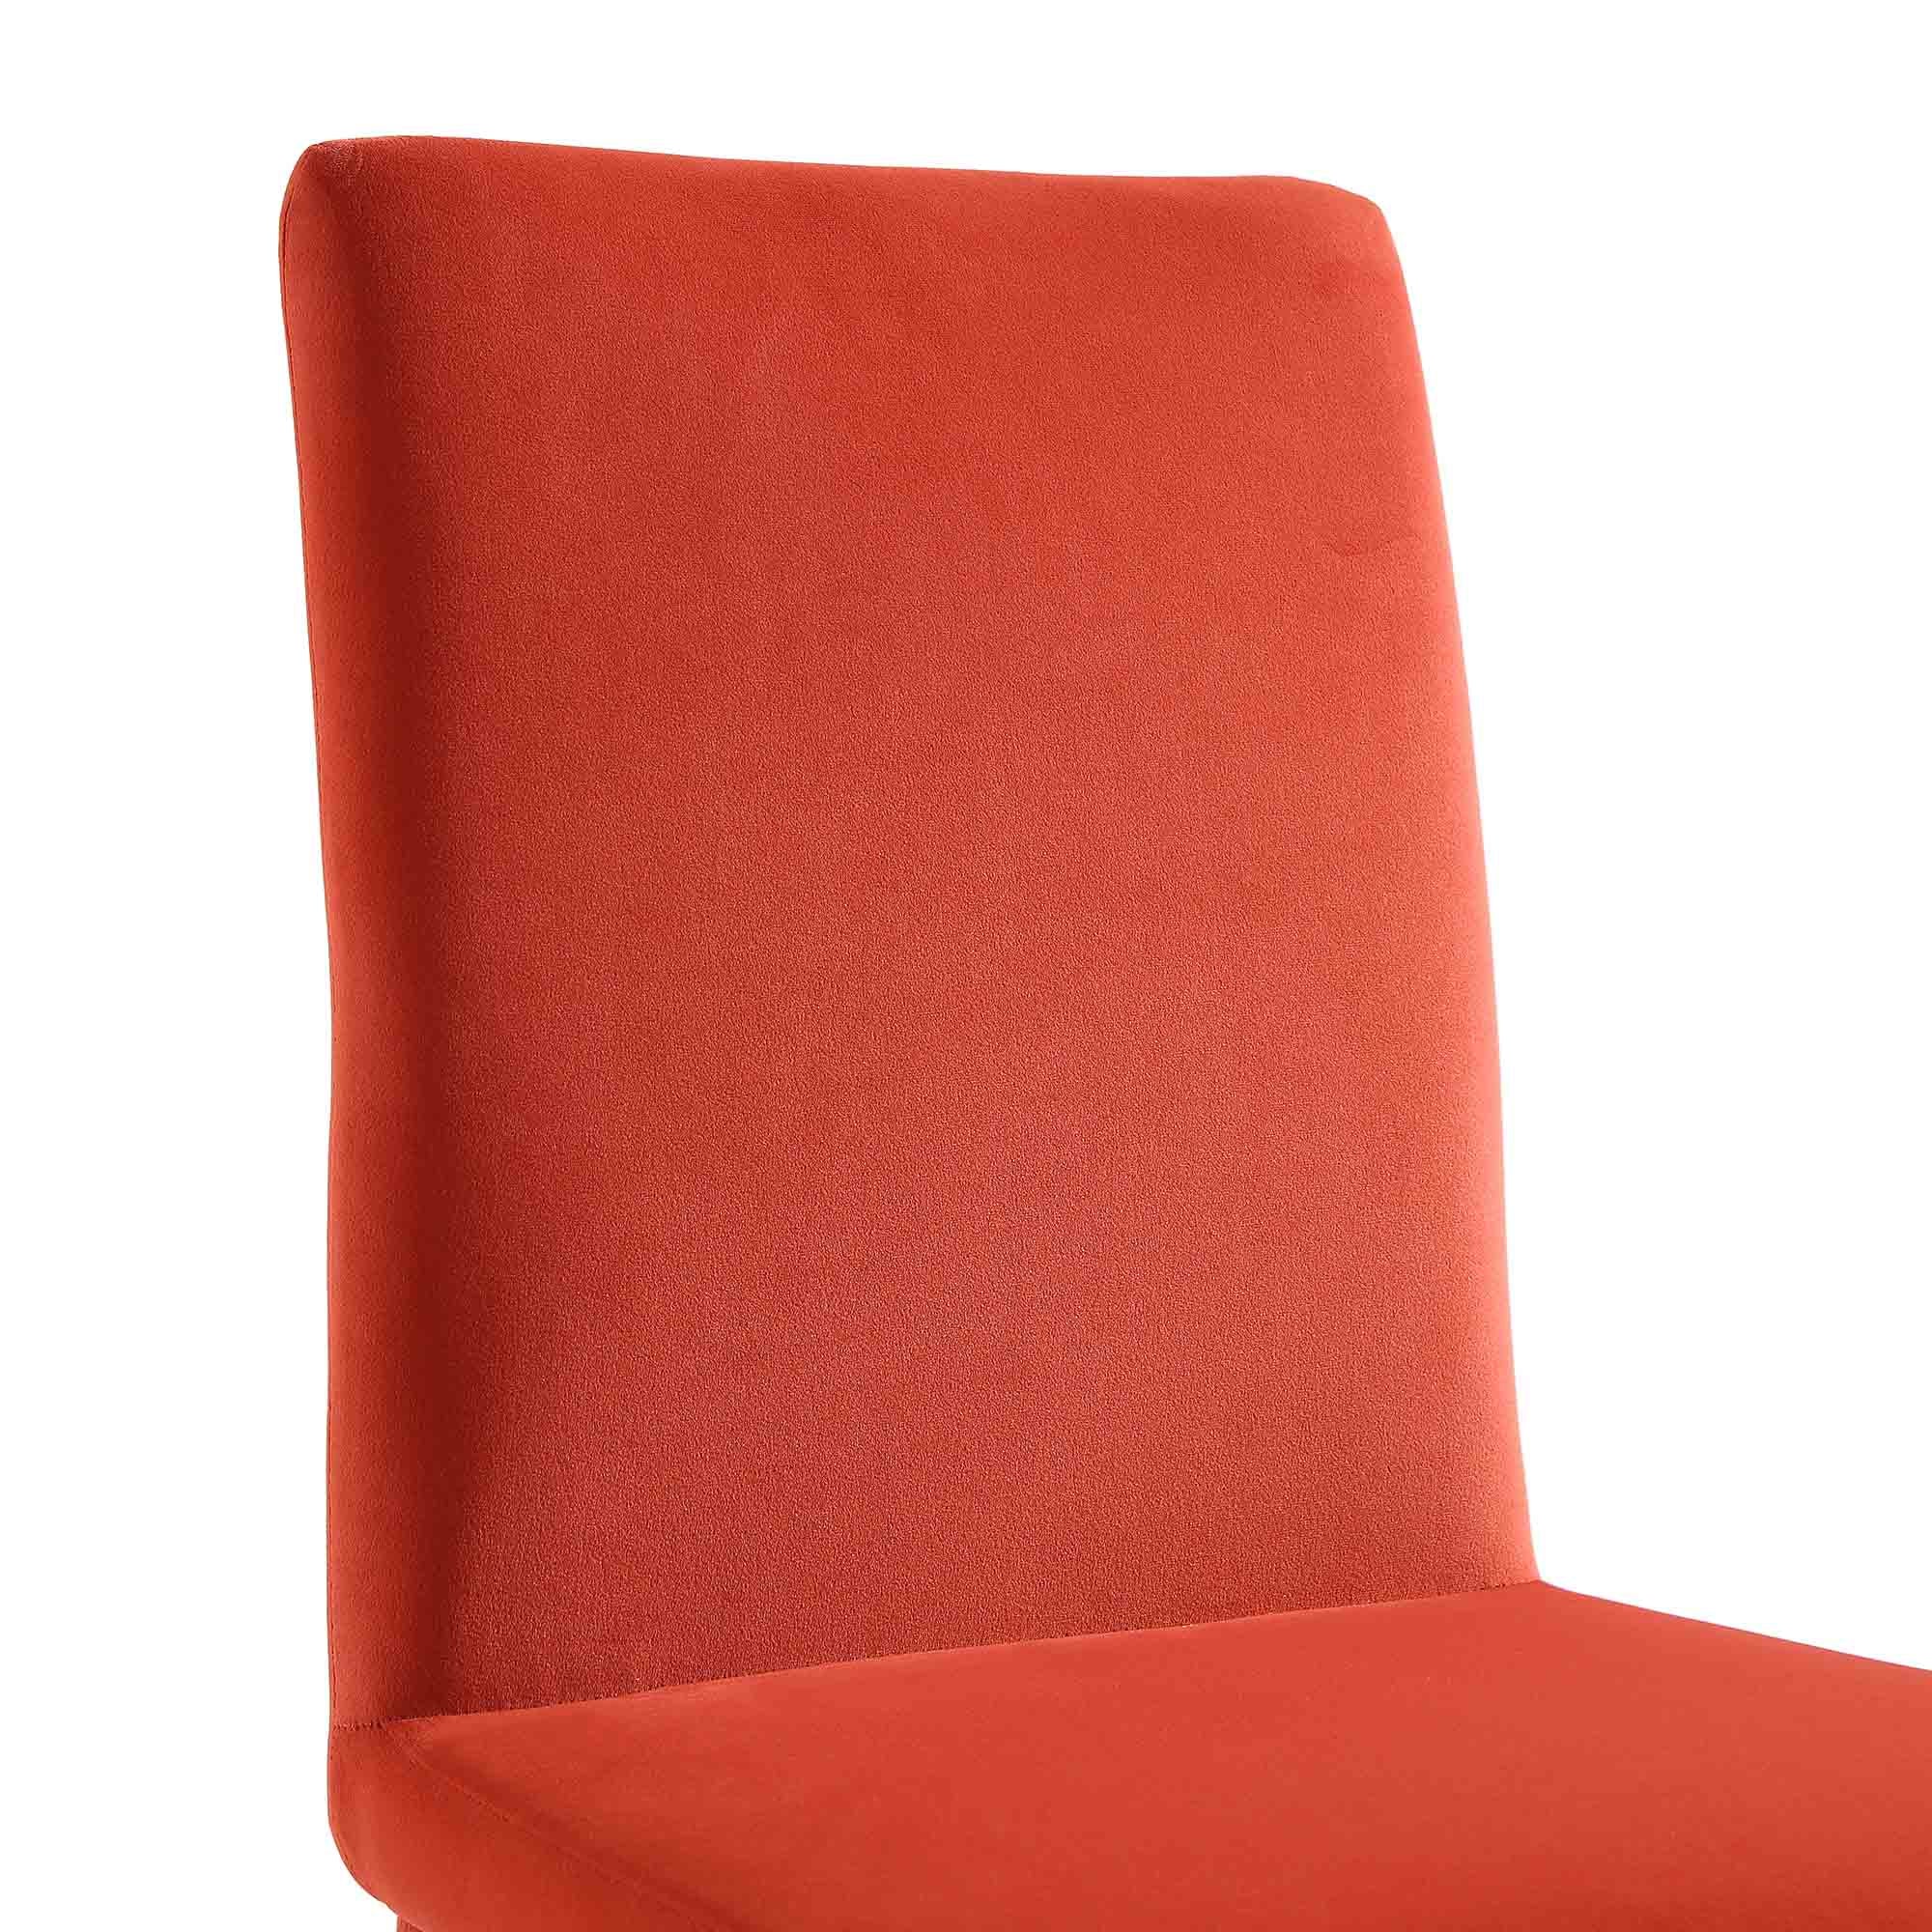 Fernie Set of 2 Ochre Burnt Orange Velvet Dining Chairs with Upholstered Legs